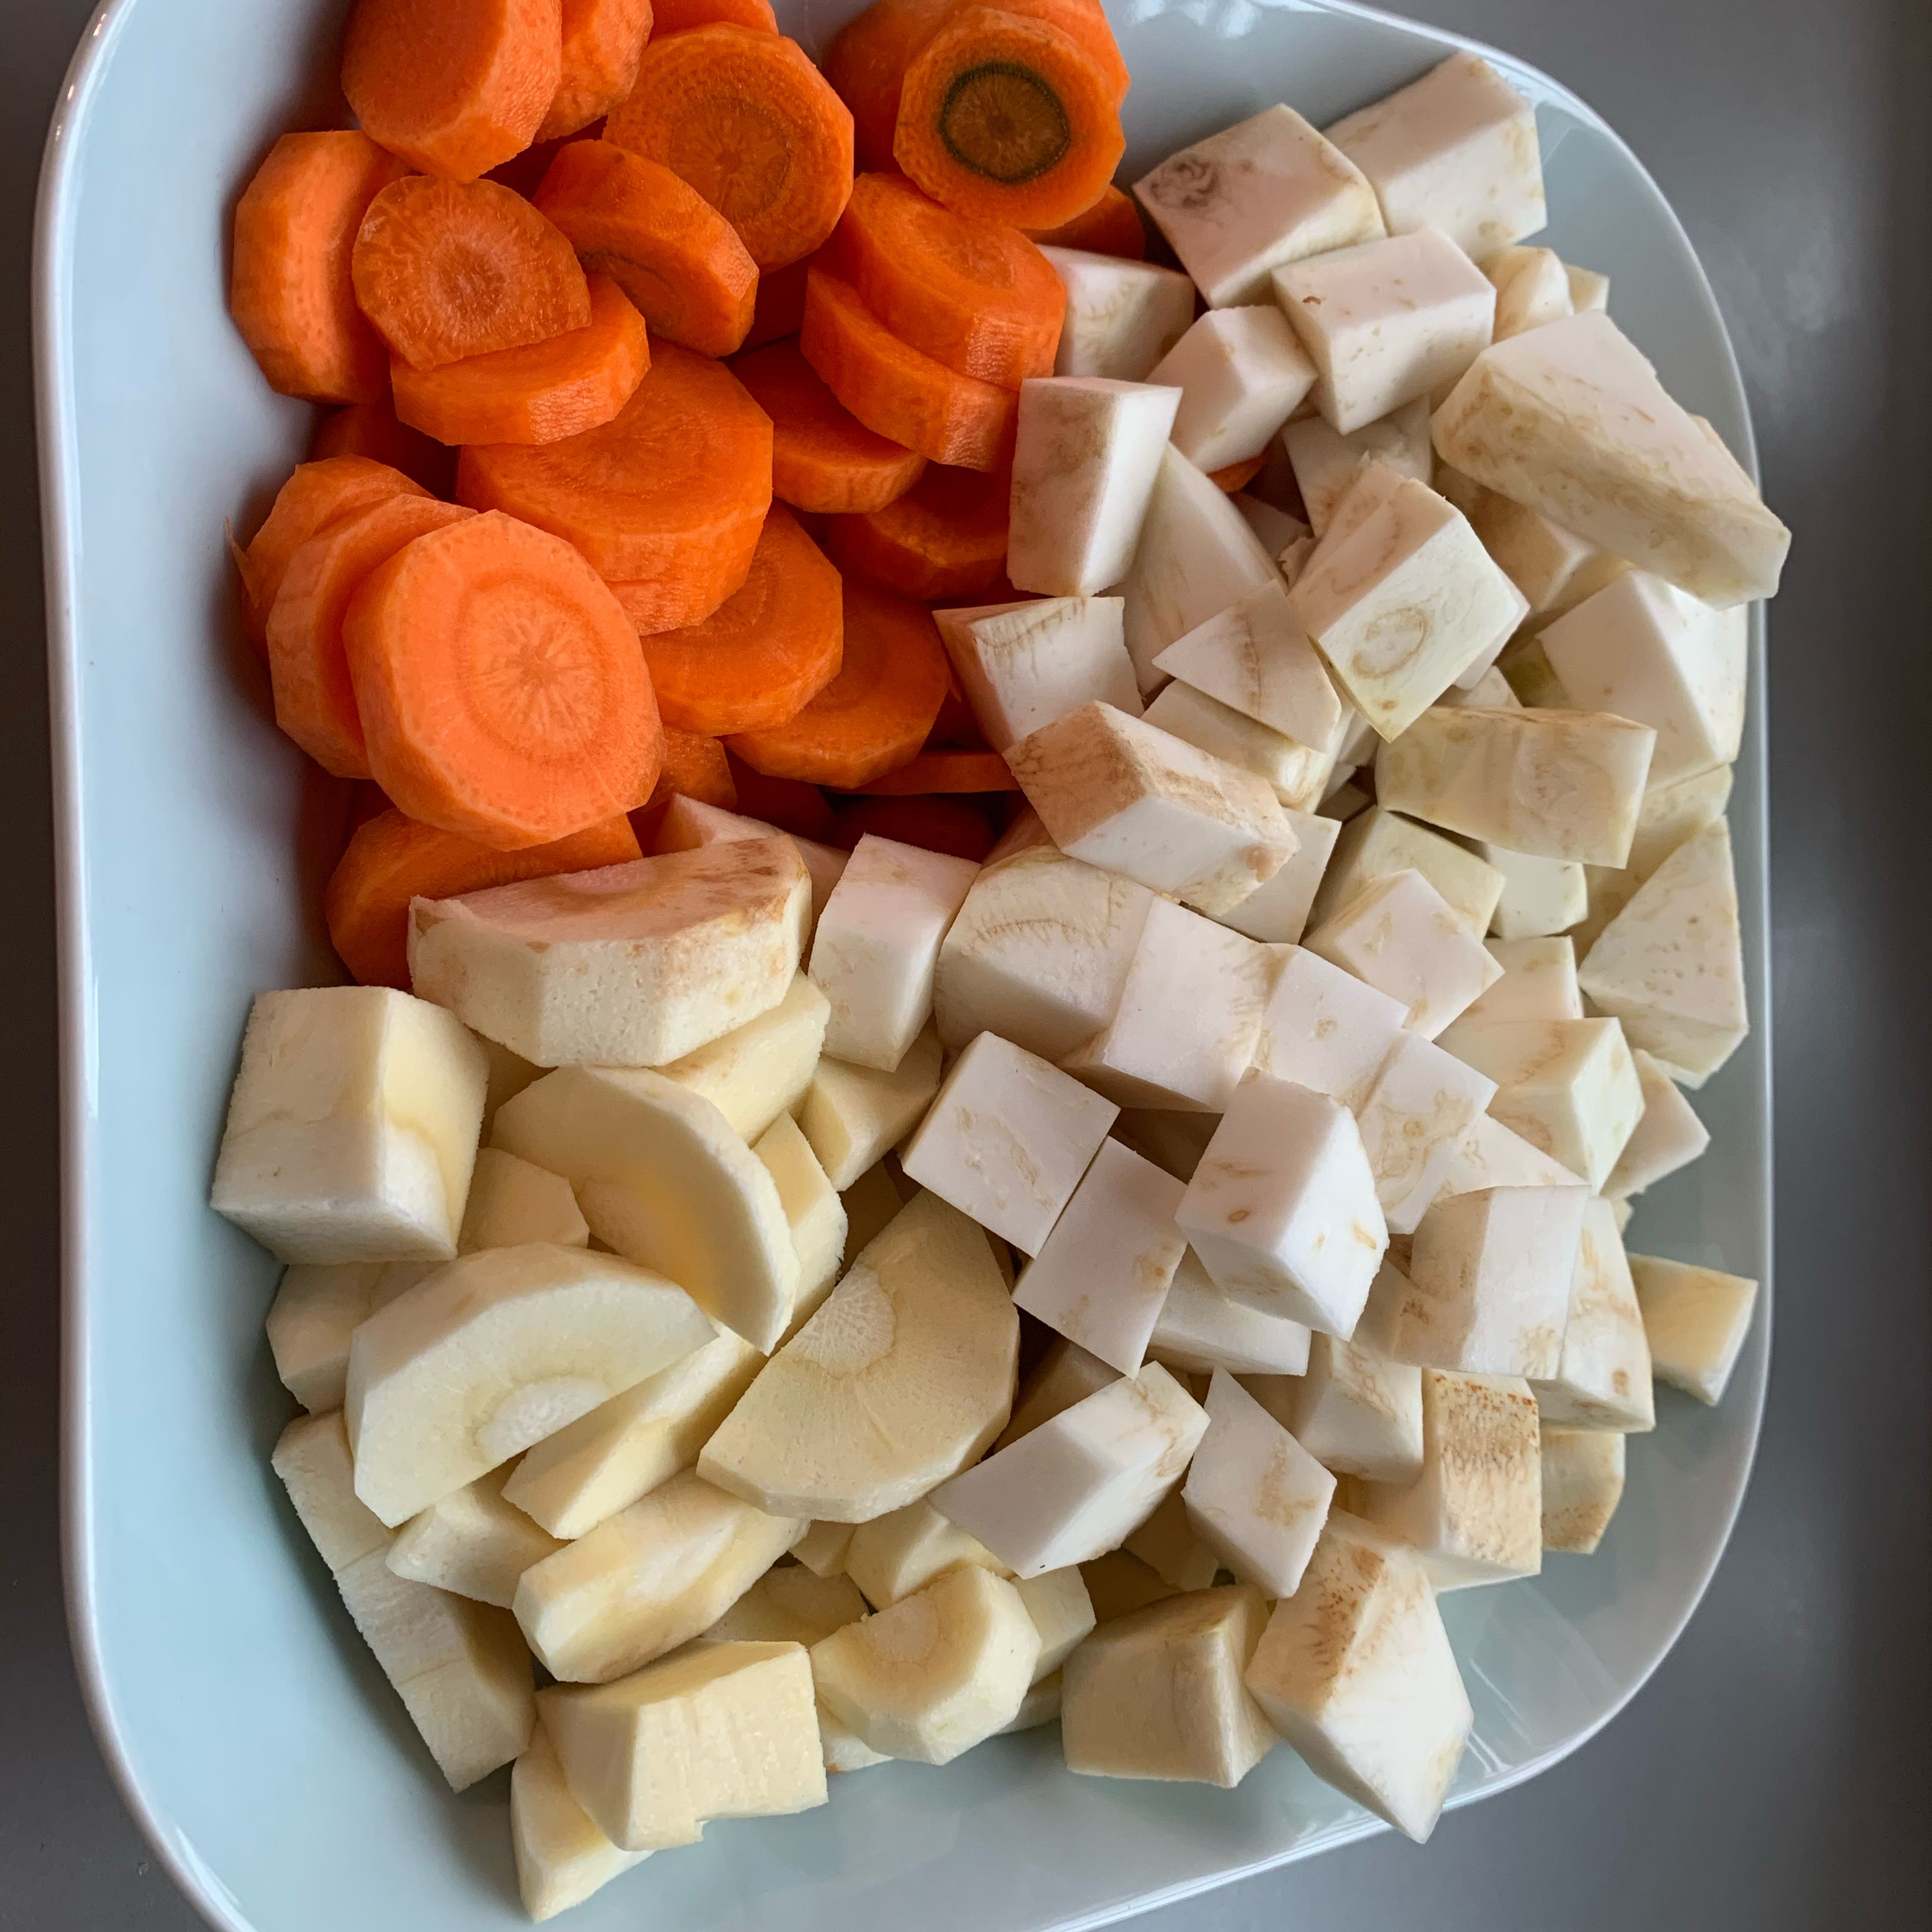 Das Gemüse vorbereiten, heisst kleinschneiden. (Karotten, Sellerie und Pastinake oder Petersilienwurzel) Wenn das Fleisch fast gar ist in den Topf geben und ca. 20 Minuten mit kochen.